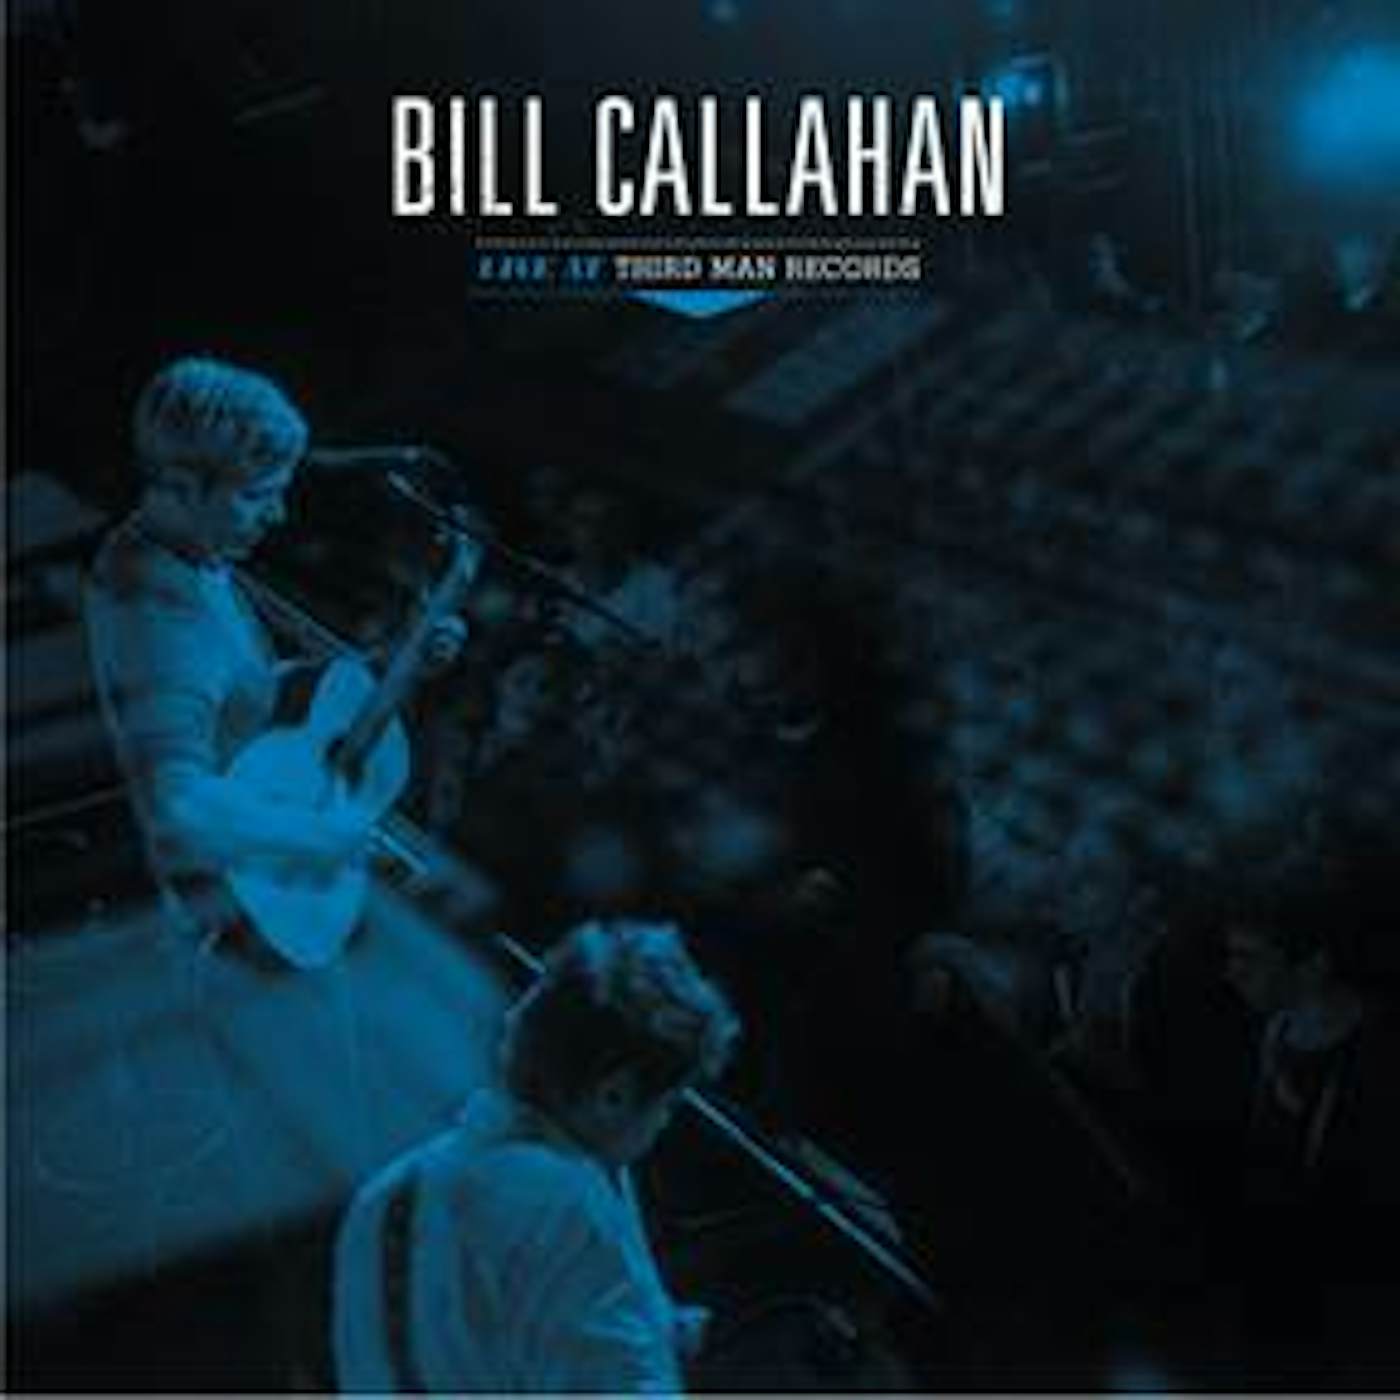 Bill Callahan LIVE AT THIRD MAN RECORDS Vinyl Record